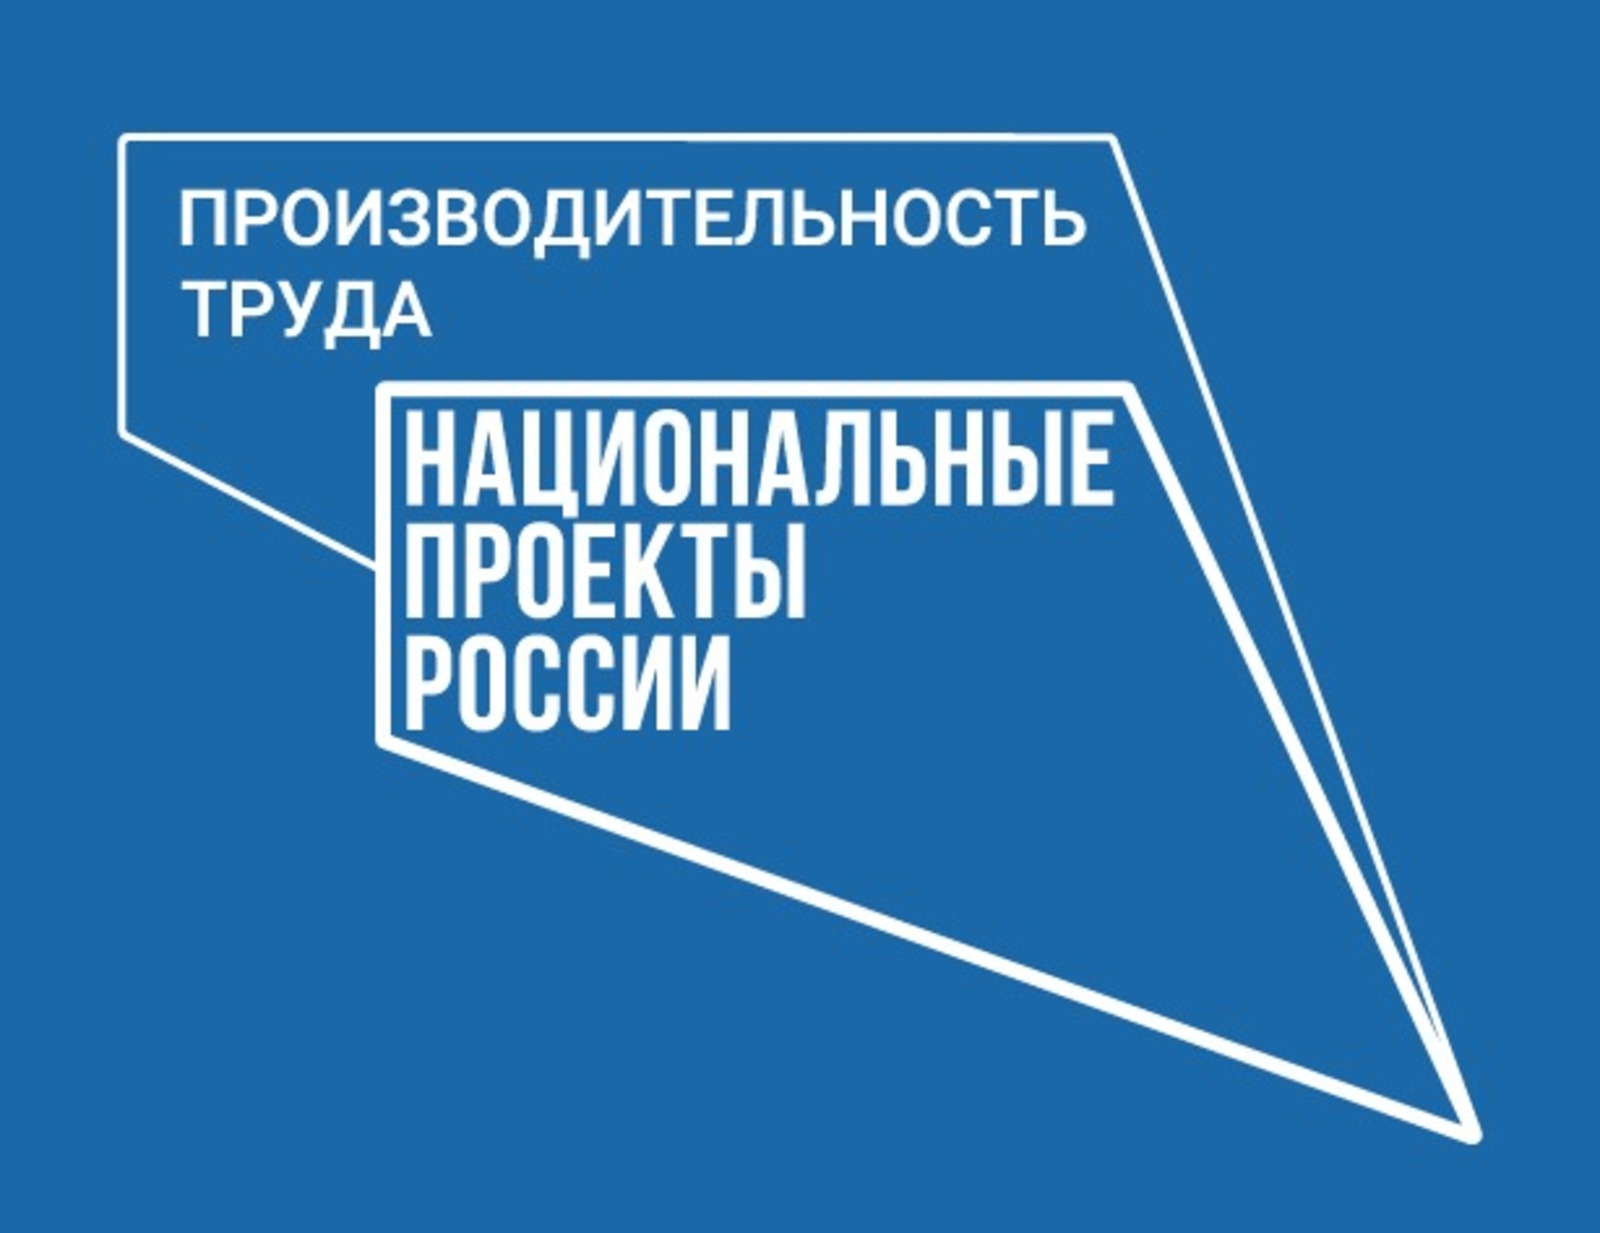 Башкортостан вошел в тройку регионов по реализации нацпроекта «Производительность труда»